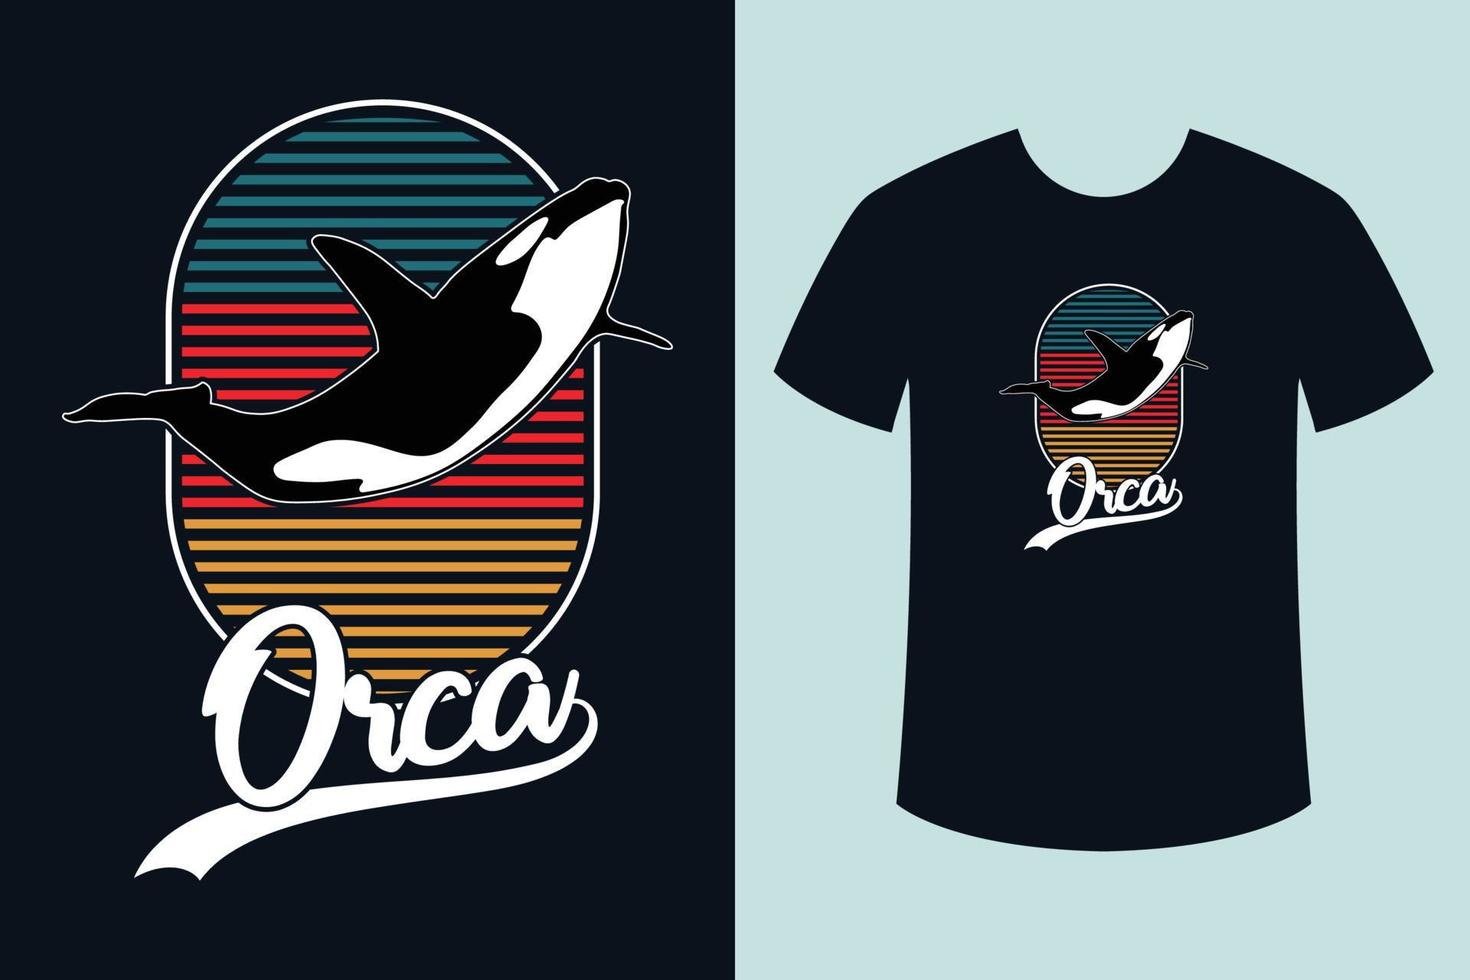 vetor de design de camiseta orca vintage retrô